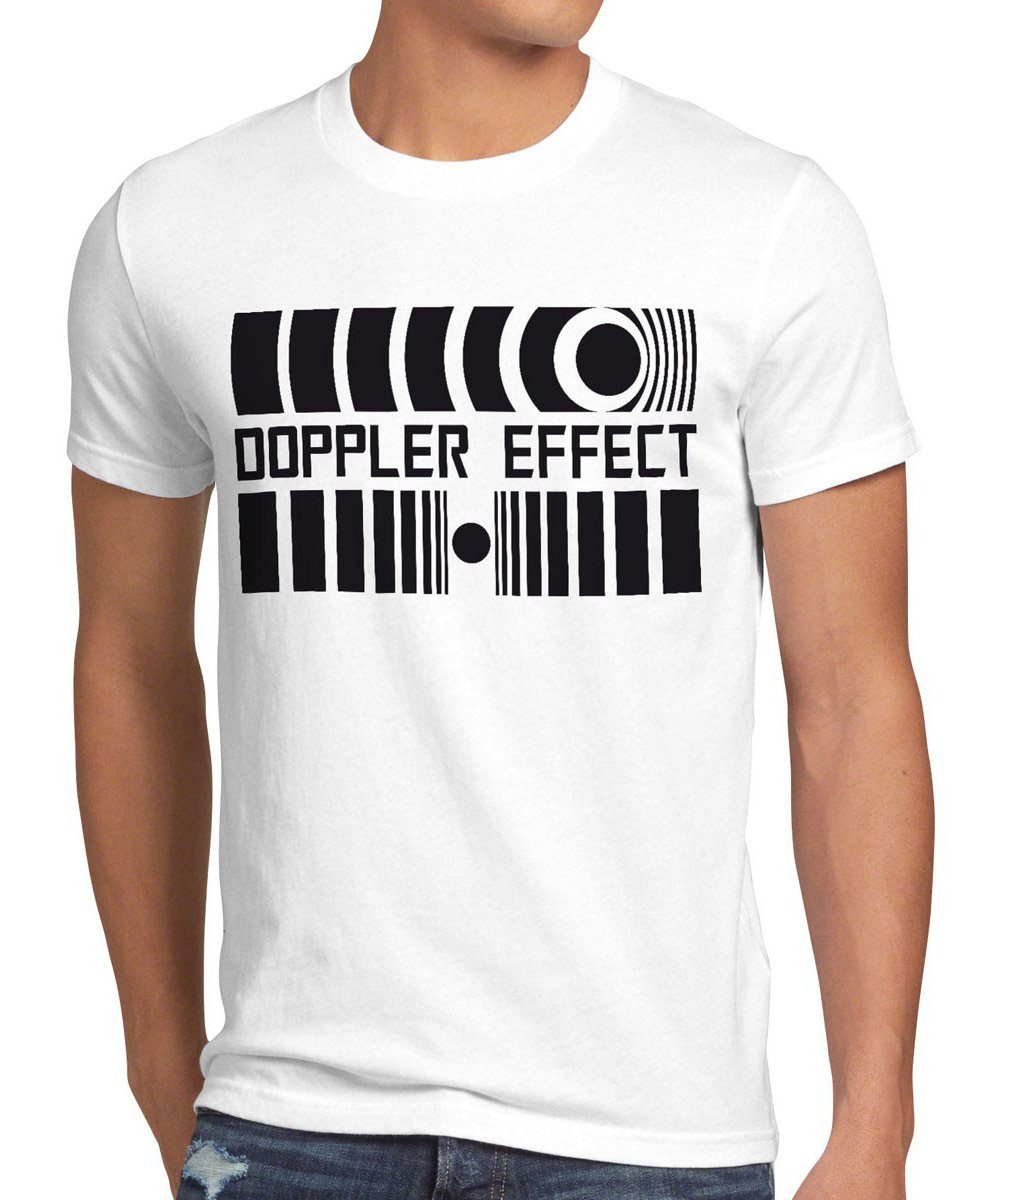 style3 Print-Shirt Herren T-Shirt Doppler Effects Sheldon Cooper Big Bang Schall tbbt Theory Effekt weiß